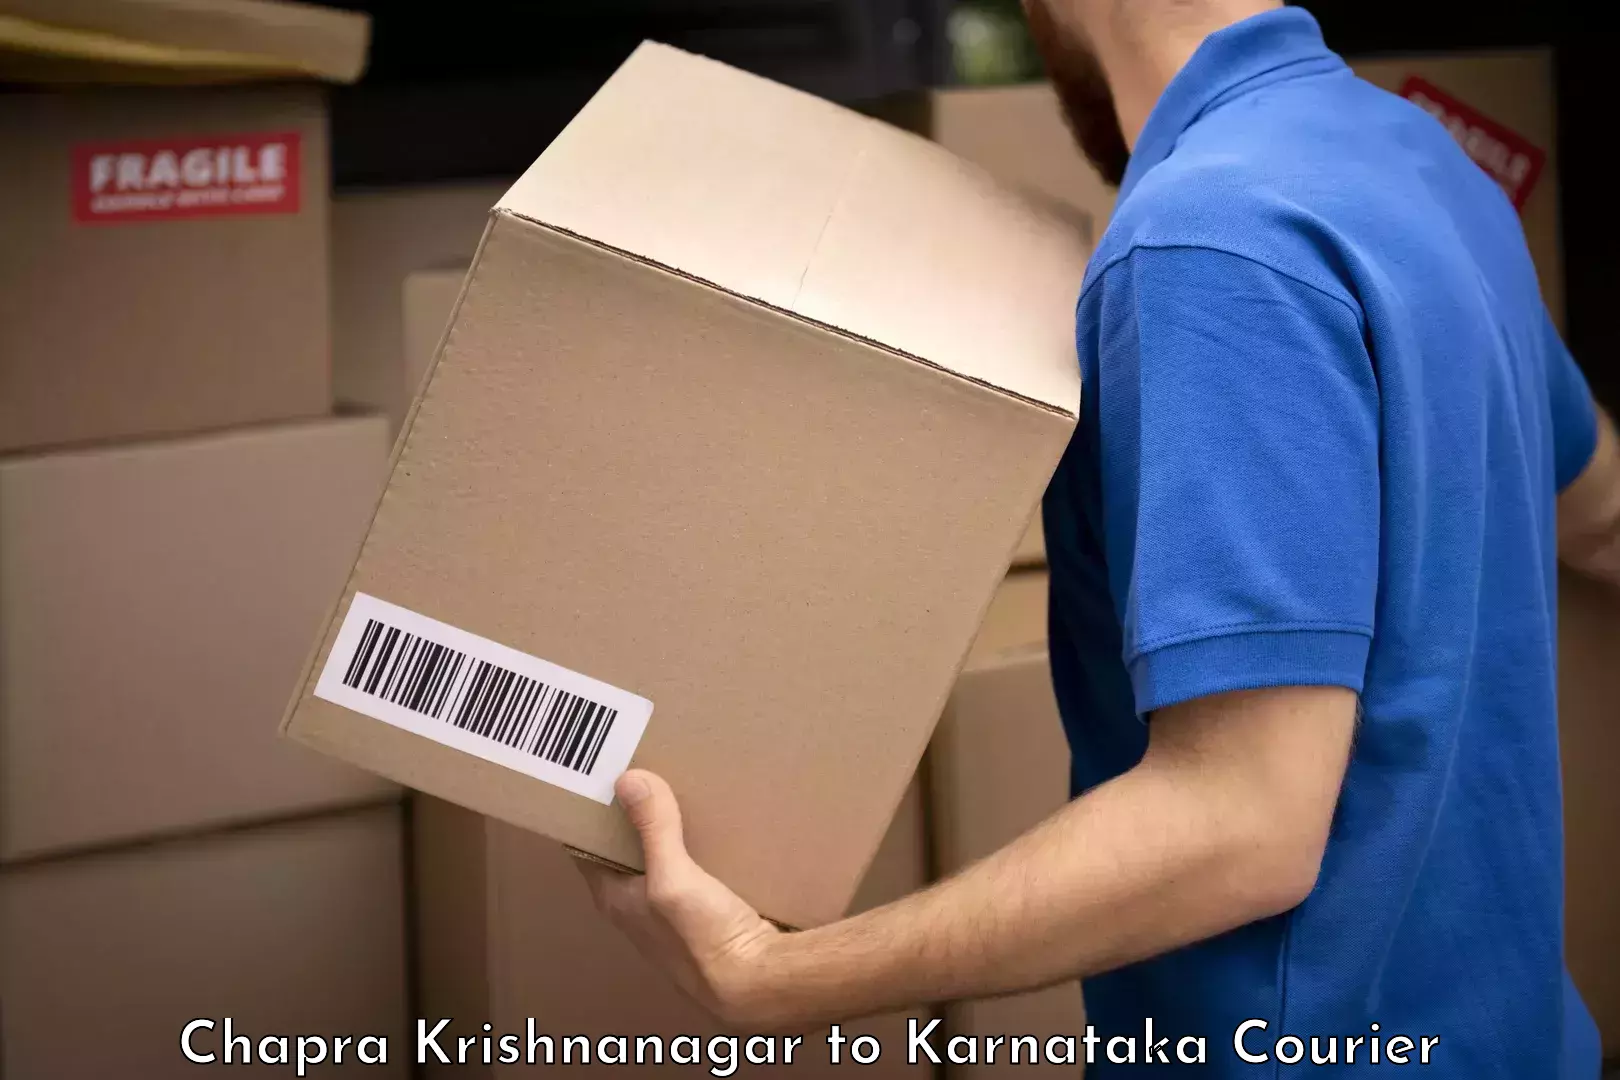 High-quality baggage shipment Chapra Krishnanagar to Tumkur